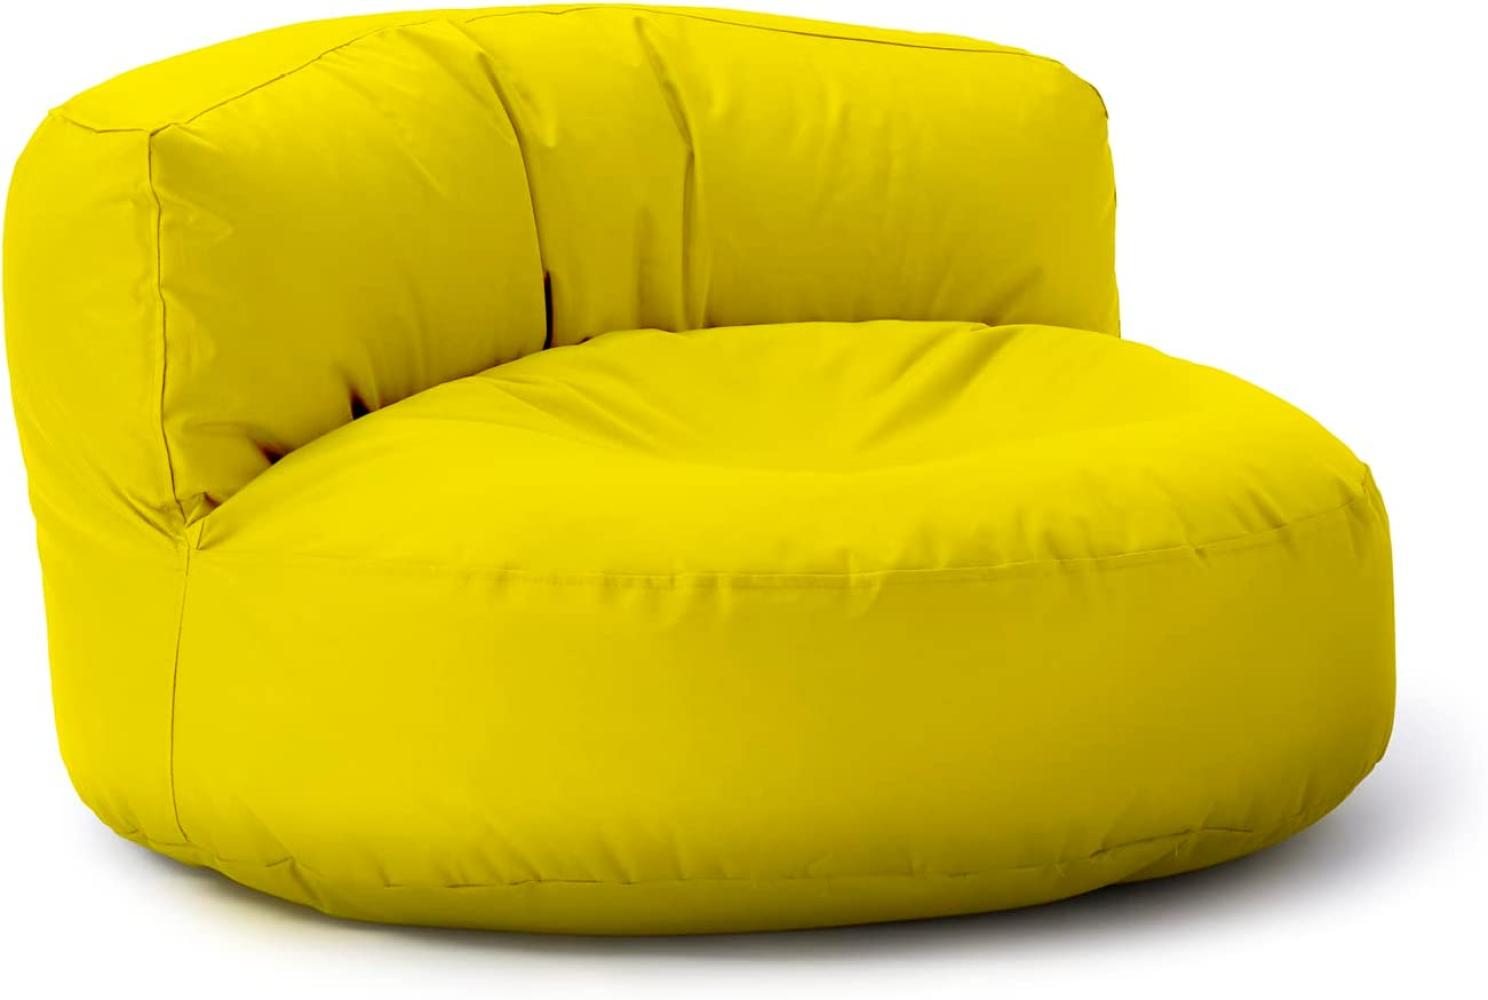 Lumaland Outdoor Sitzsack-Lounge, Rundes Sitzsack-Sofa für draußen, 320l Füllung, 90 x 50 cm, Gelb Bild 1